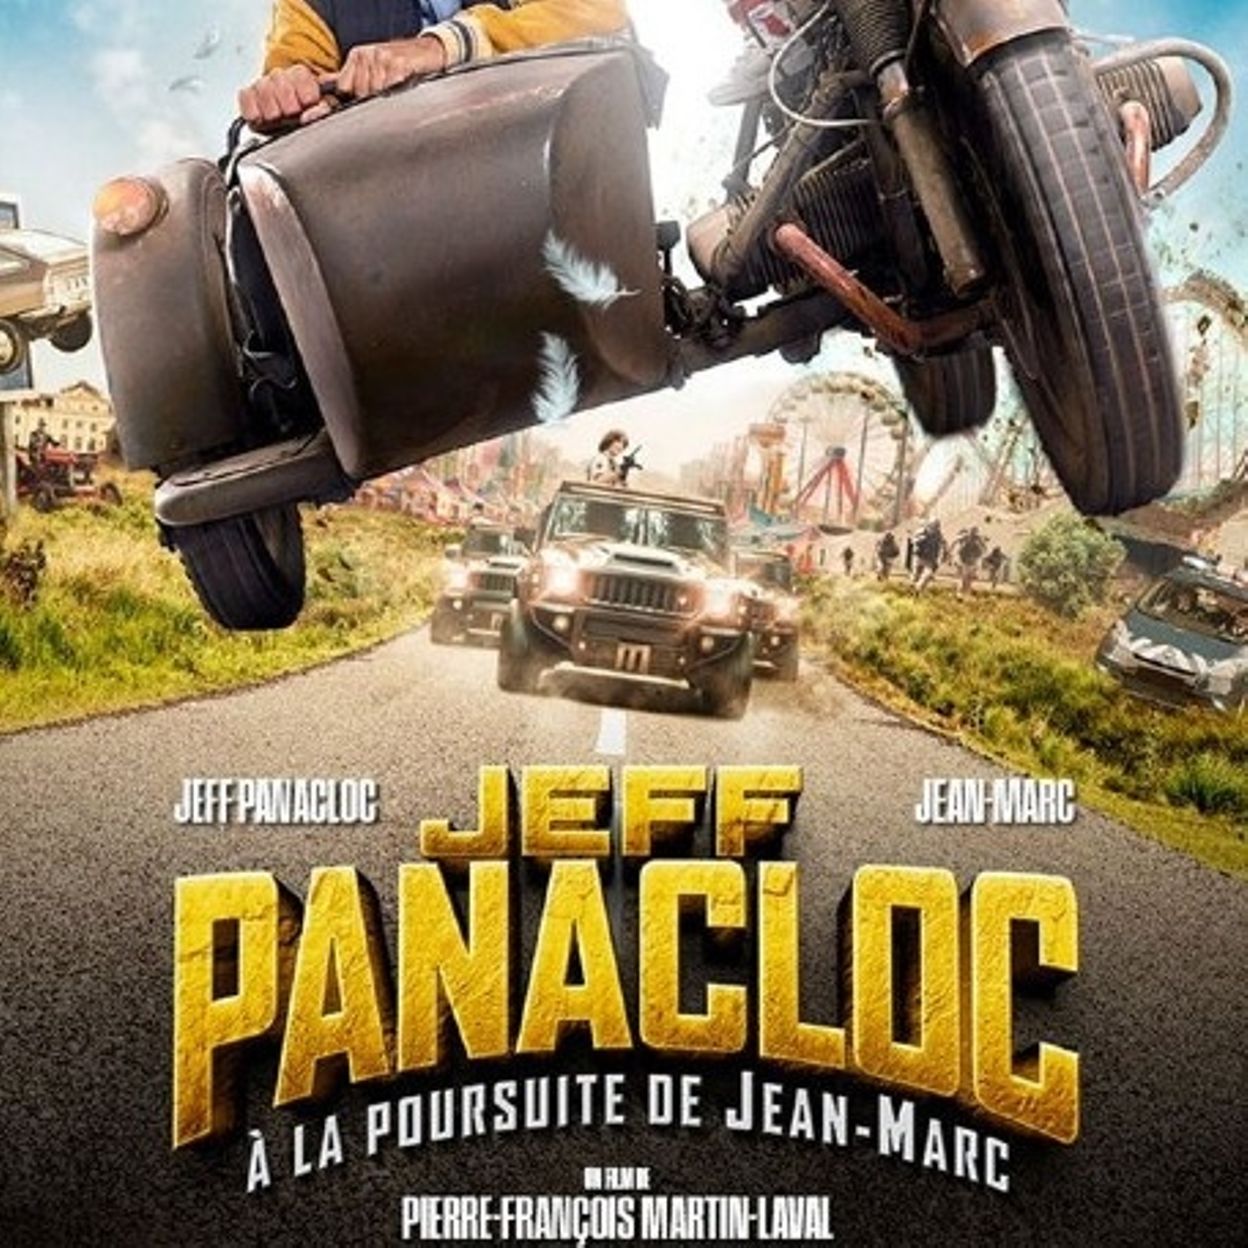 Jeff Panacloc : À la poursuite de Jean-Marc », une réjouissante comédie  d'aventure pour toute la famille 